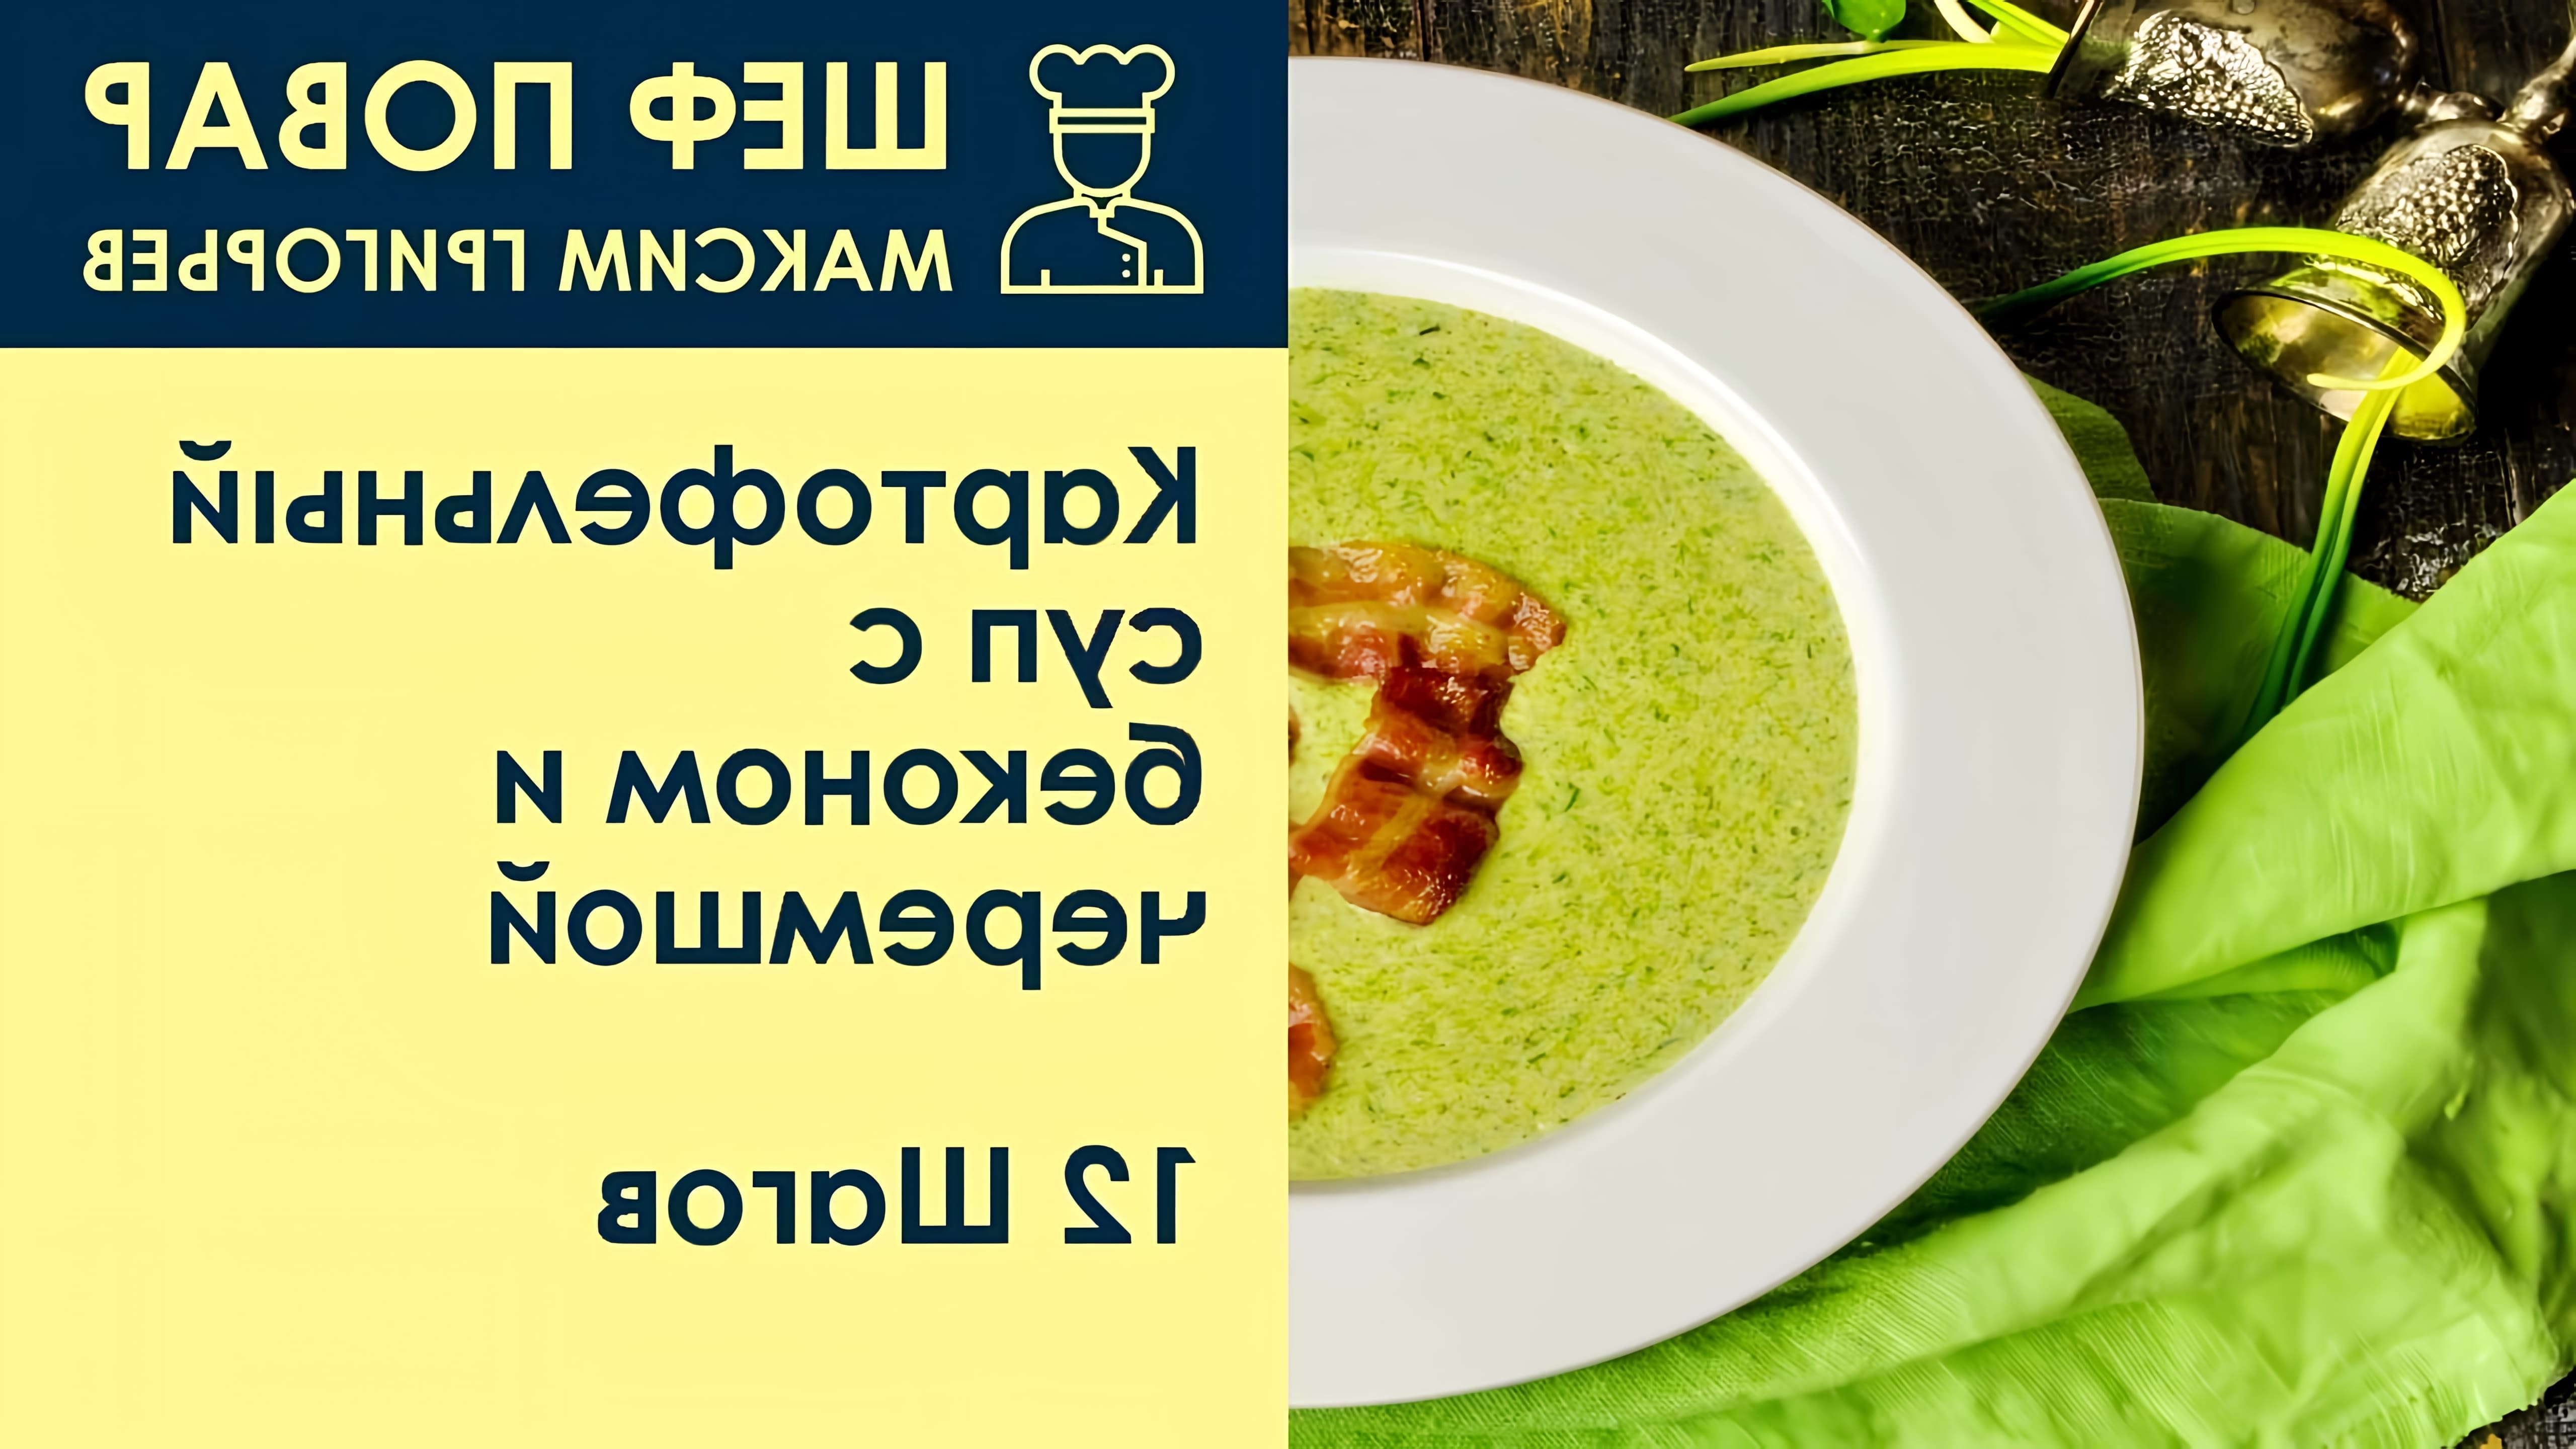 В этом видео шеф-повар Максим Григорьев представляет рецепт картофельного супа с беконом и черемшой